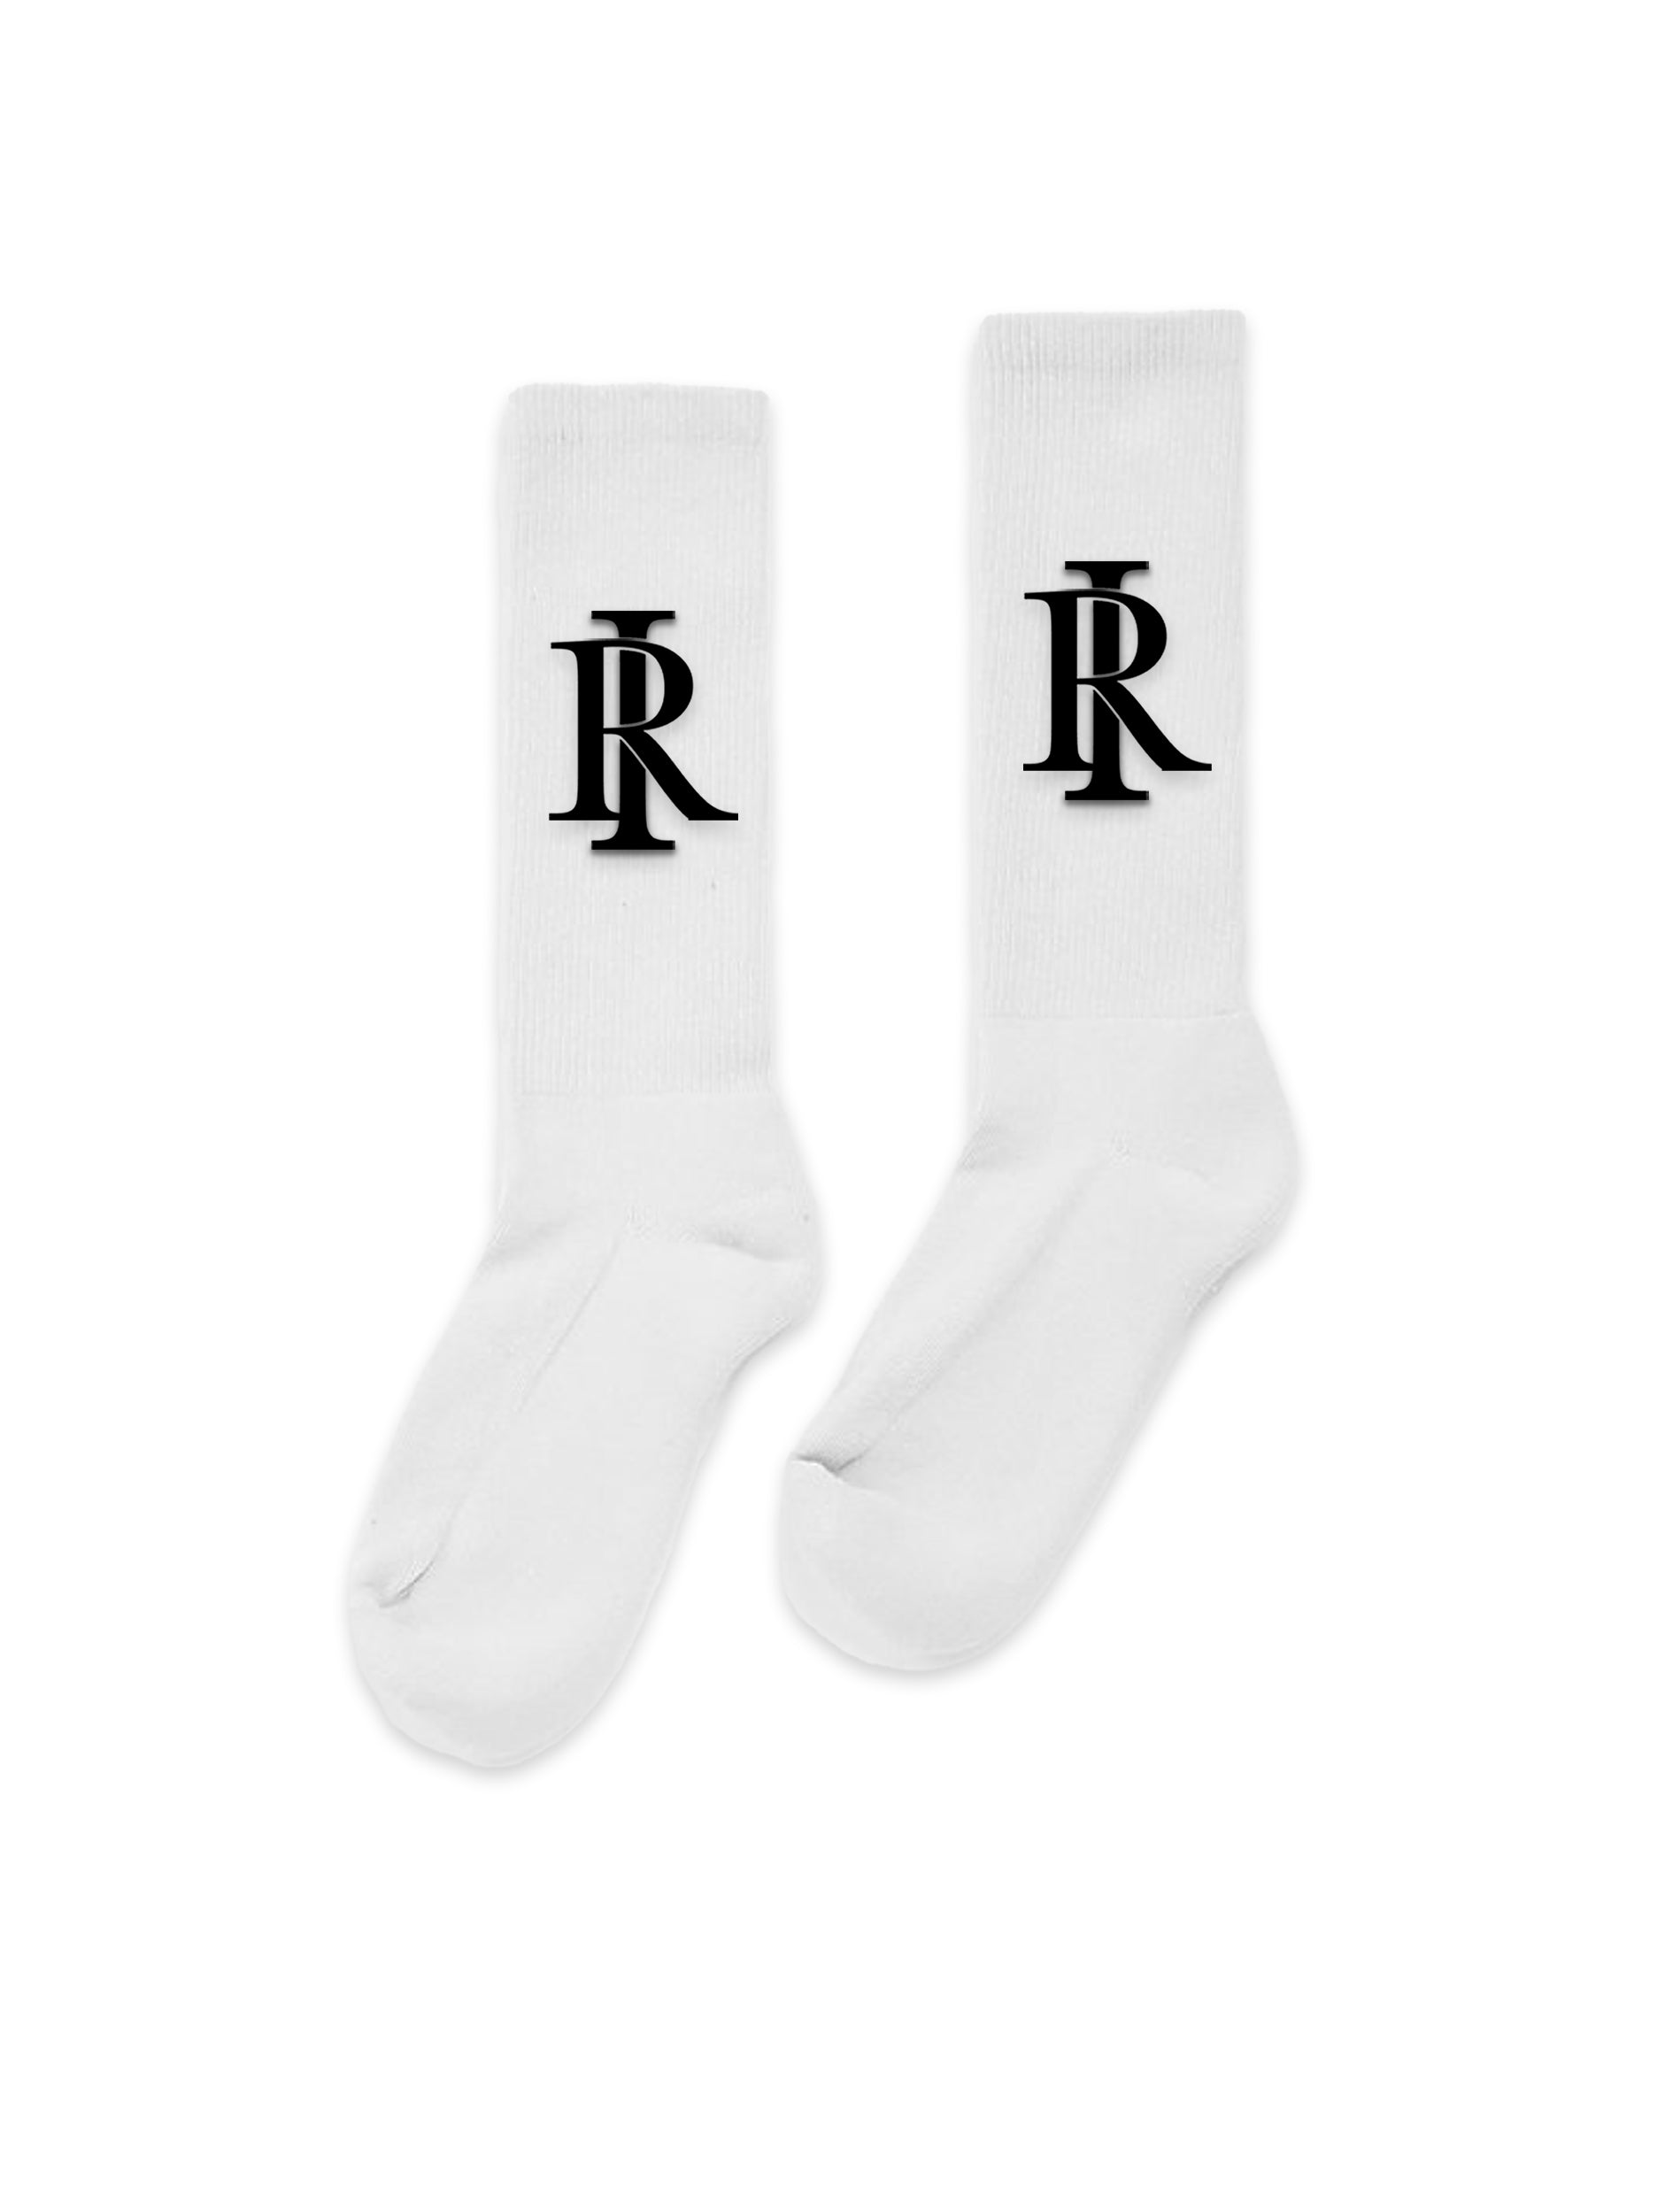 Monogram Socks - White